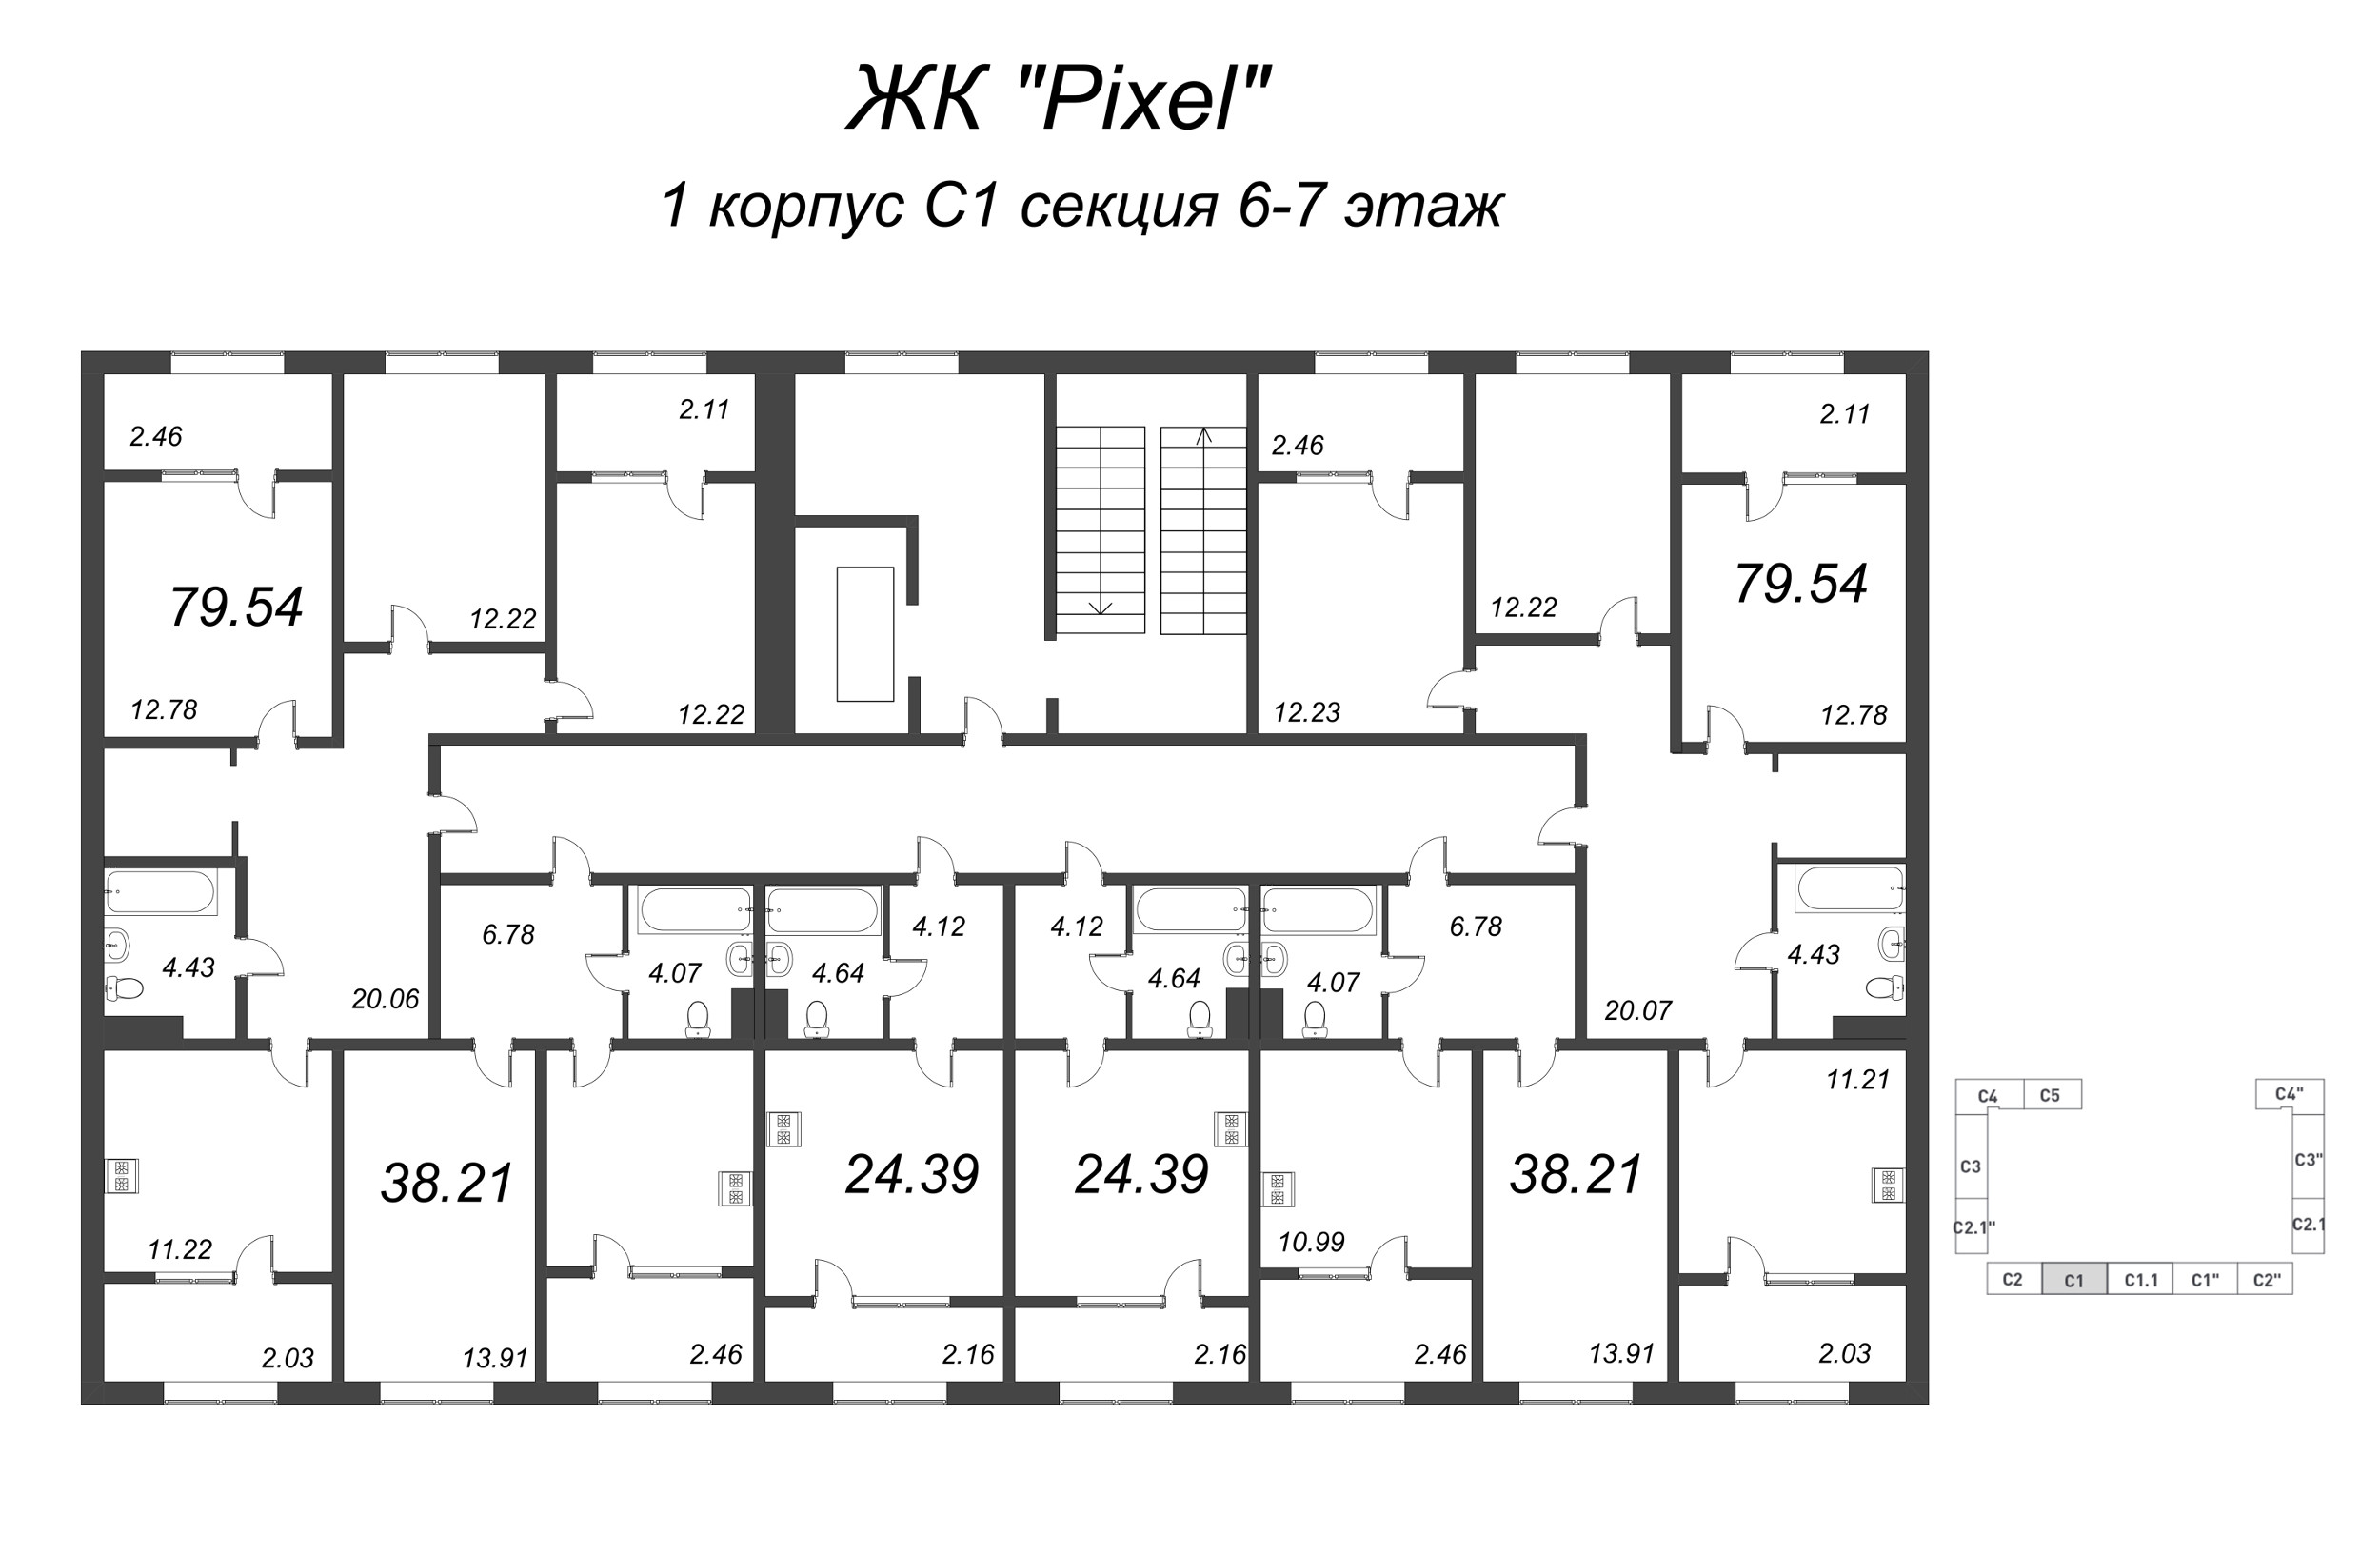 3-комнатная квартира, 79.54 м² в ЖК "Pixel" - планировка этажа